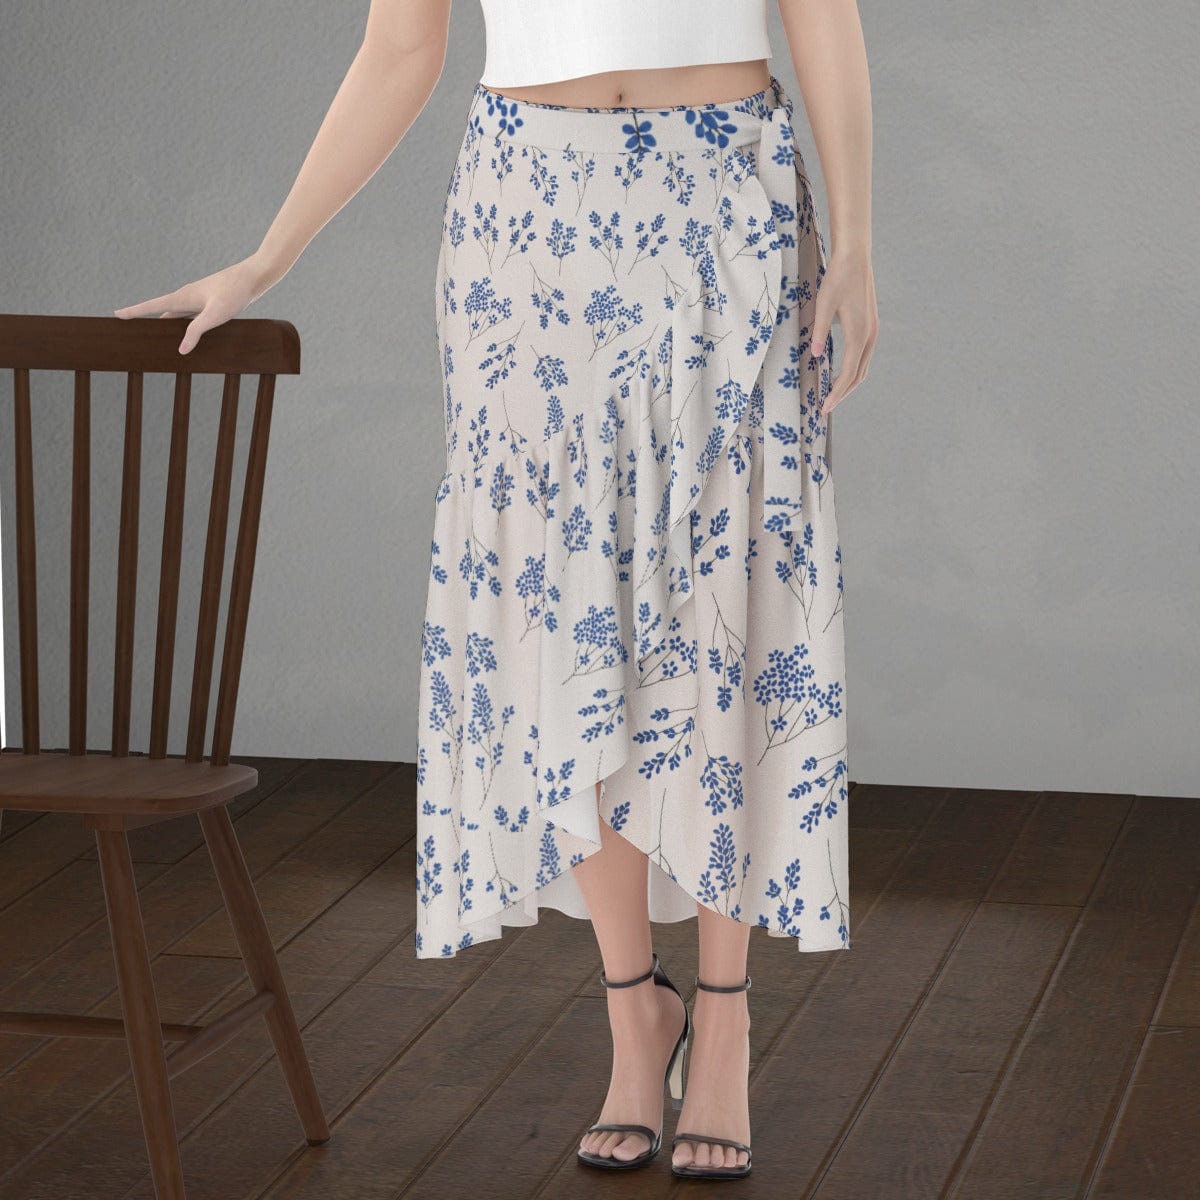 Yoycol Skirt 2XL / Ecru Ecru Blue Floral - Print Women's Wrap Skirt